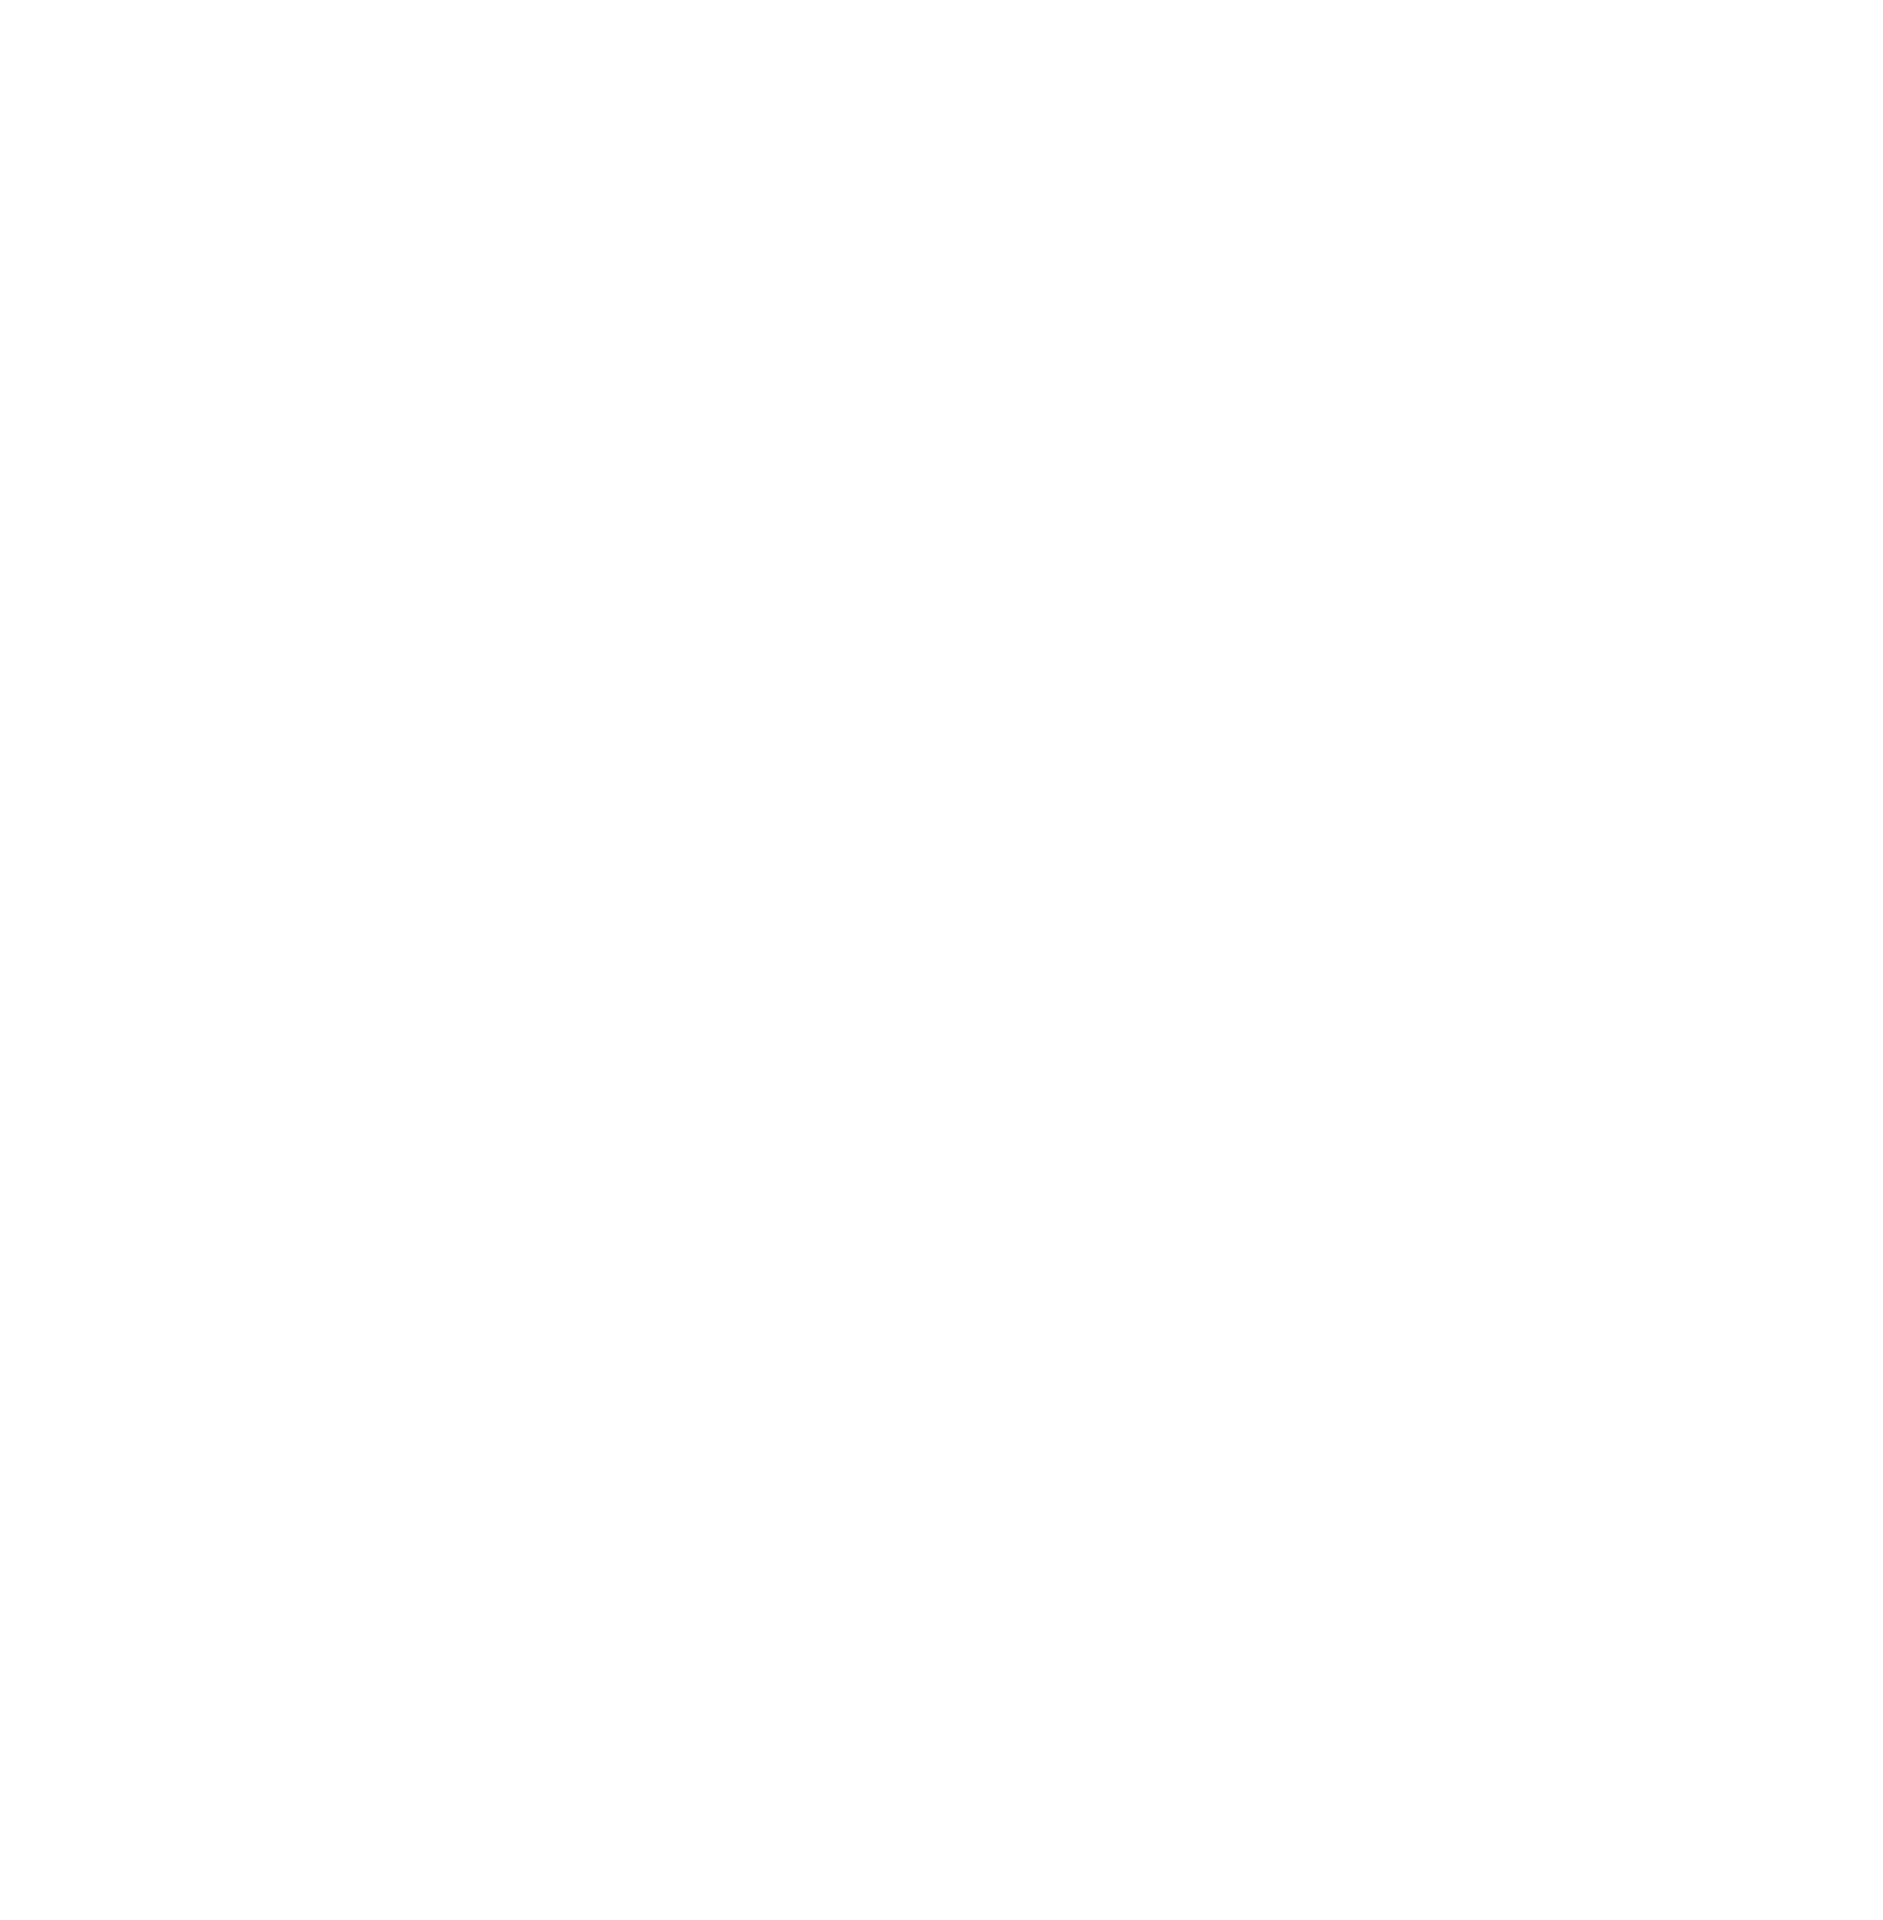 Pelican Pointe A Cajun Kitchen Est 2020